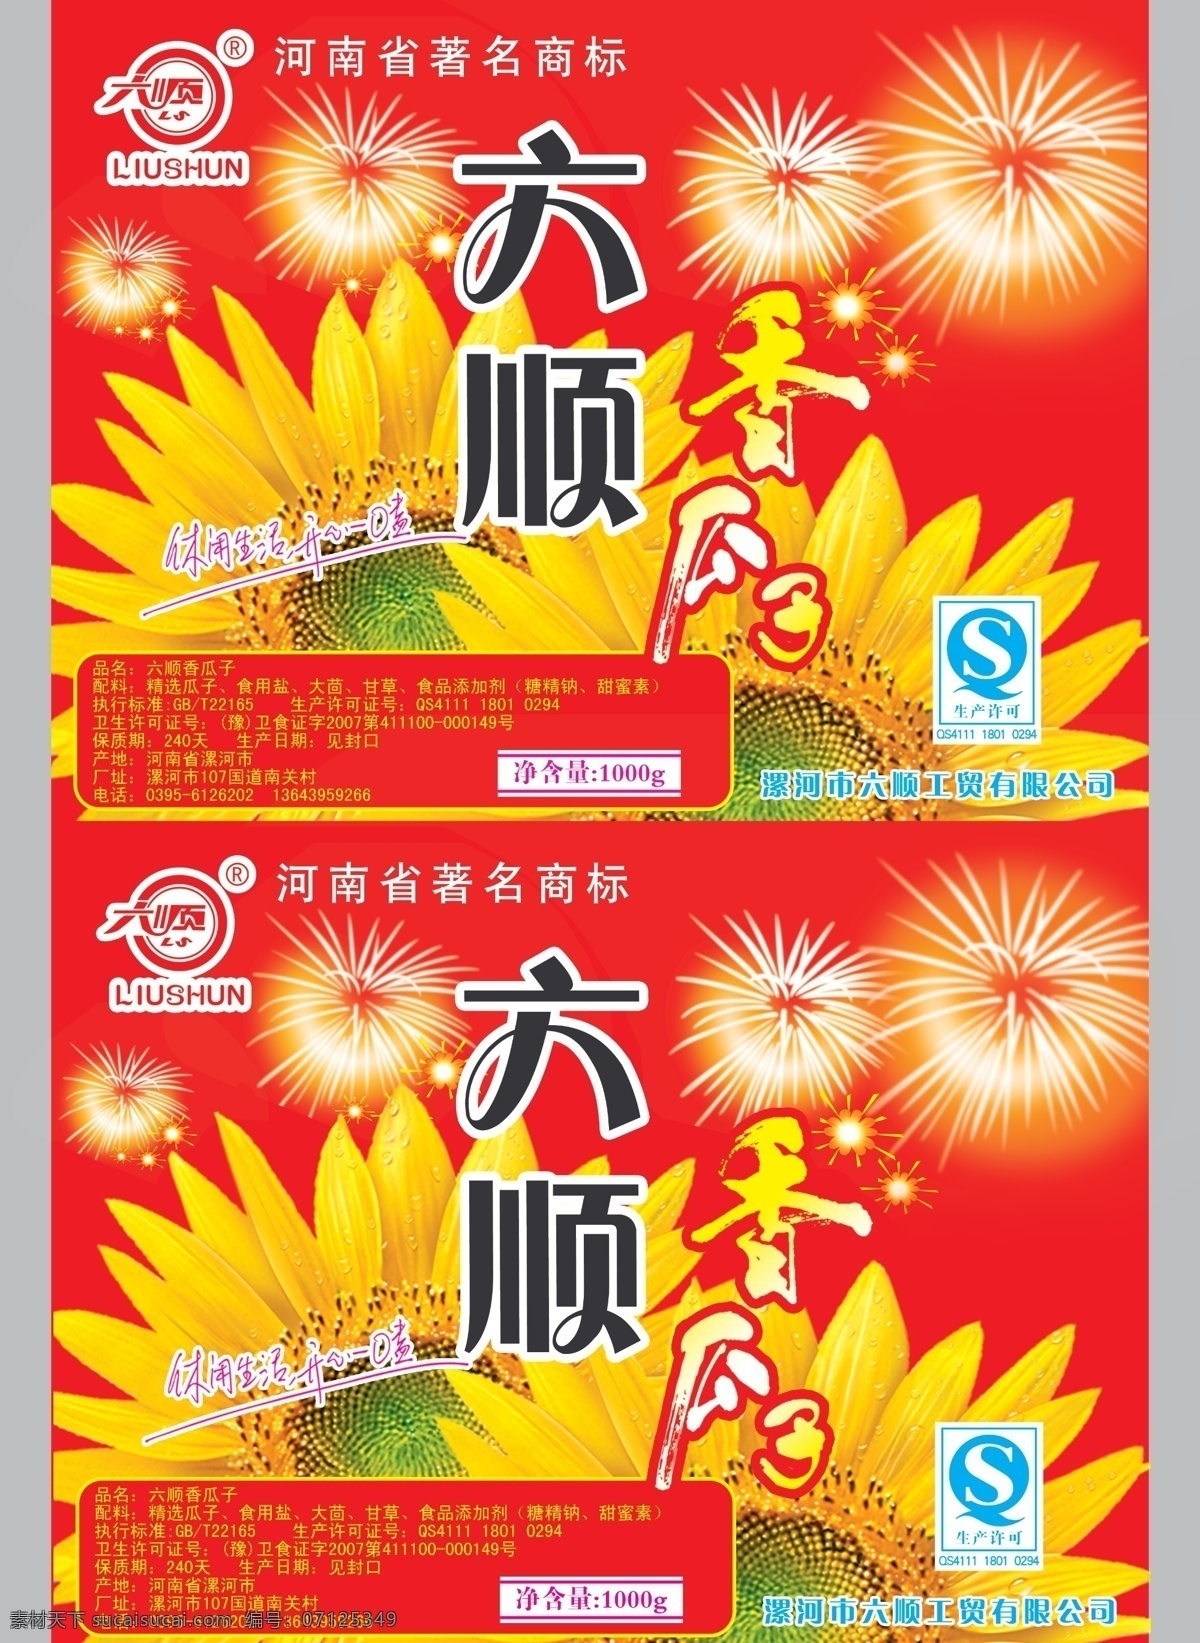 瓜子包装 向日葵 葵花 烟花 广告语 包装设计 广告设计模板 源文件